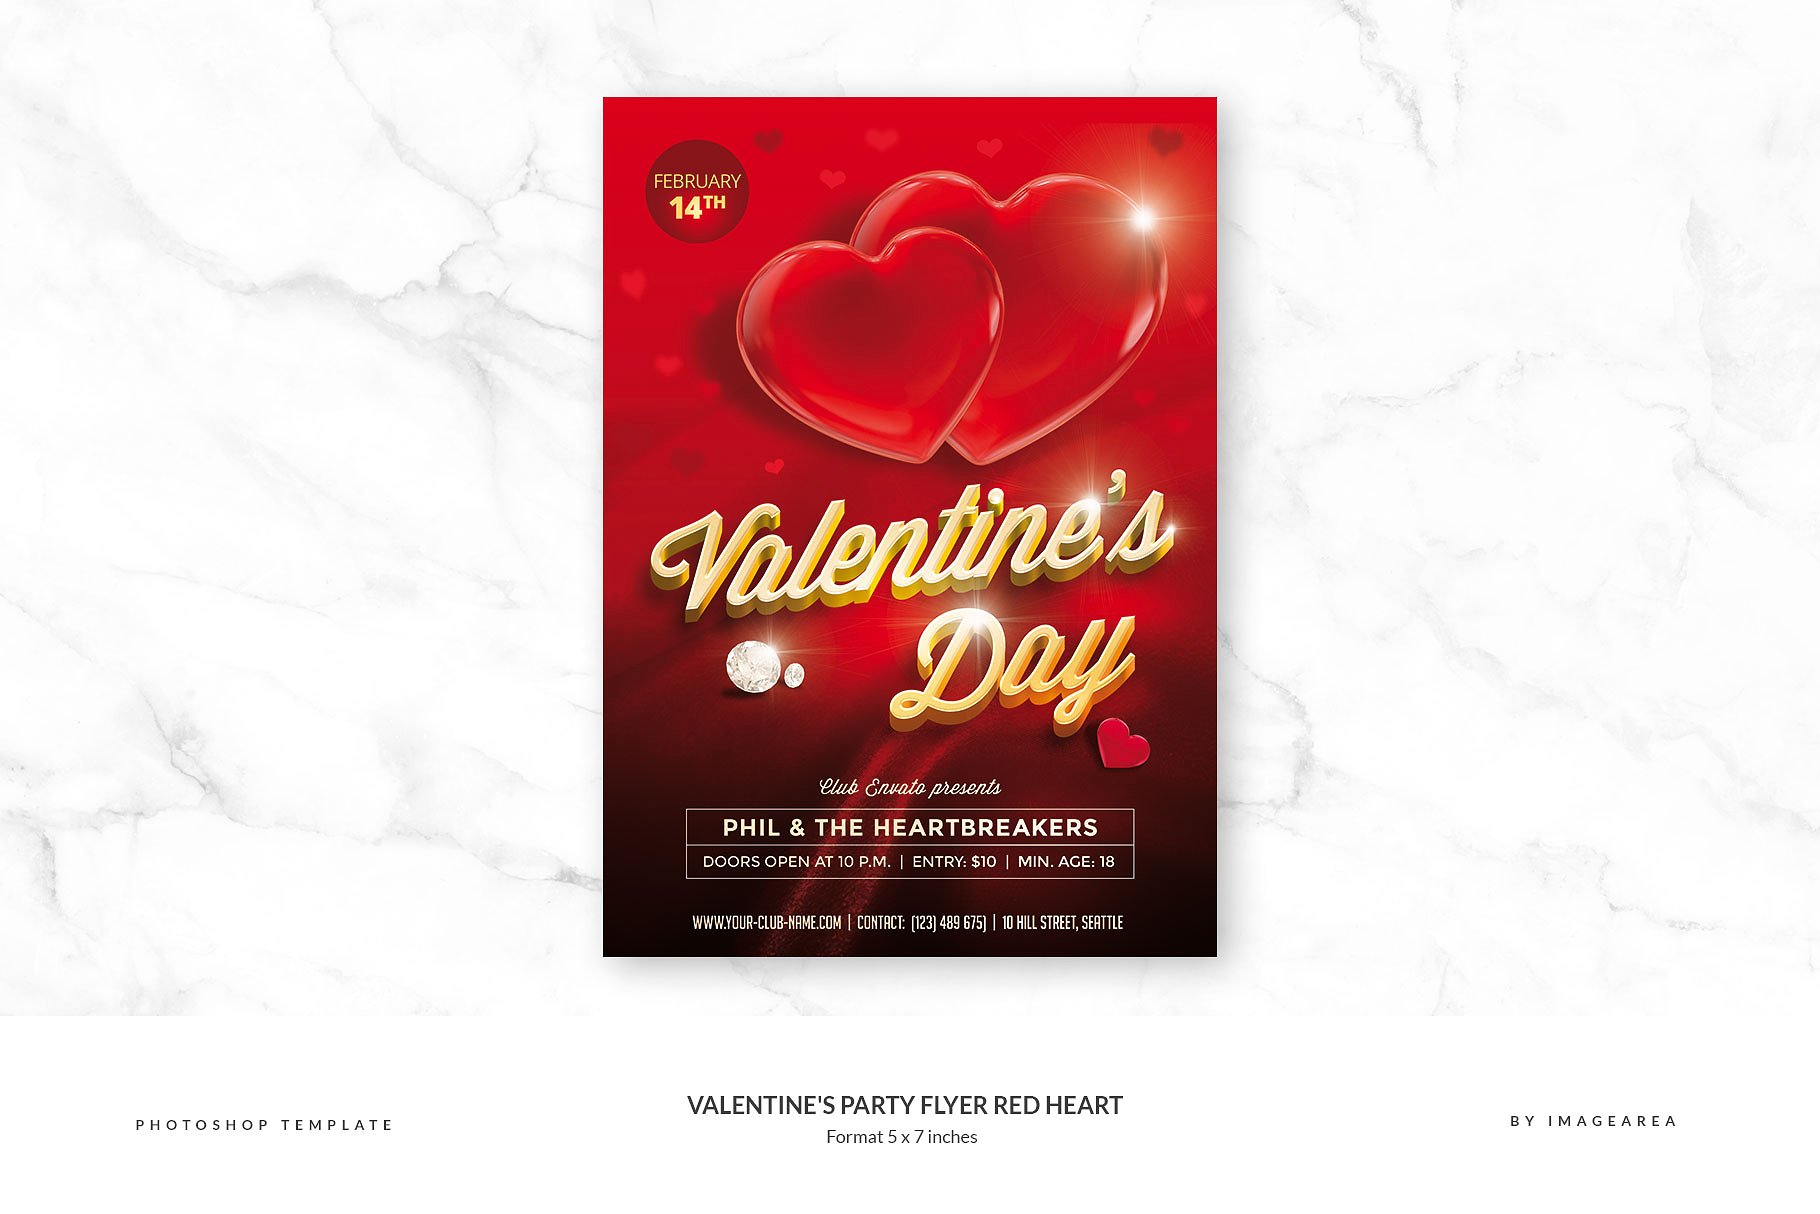 大红心-情人节活动派对传单模板  Valentine’s Party Flyer Red Heart插图